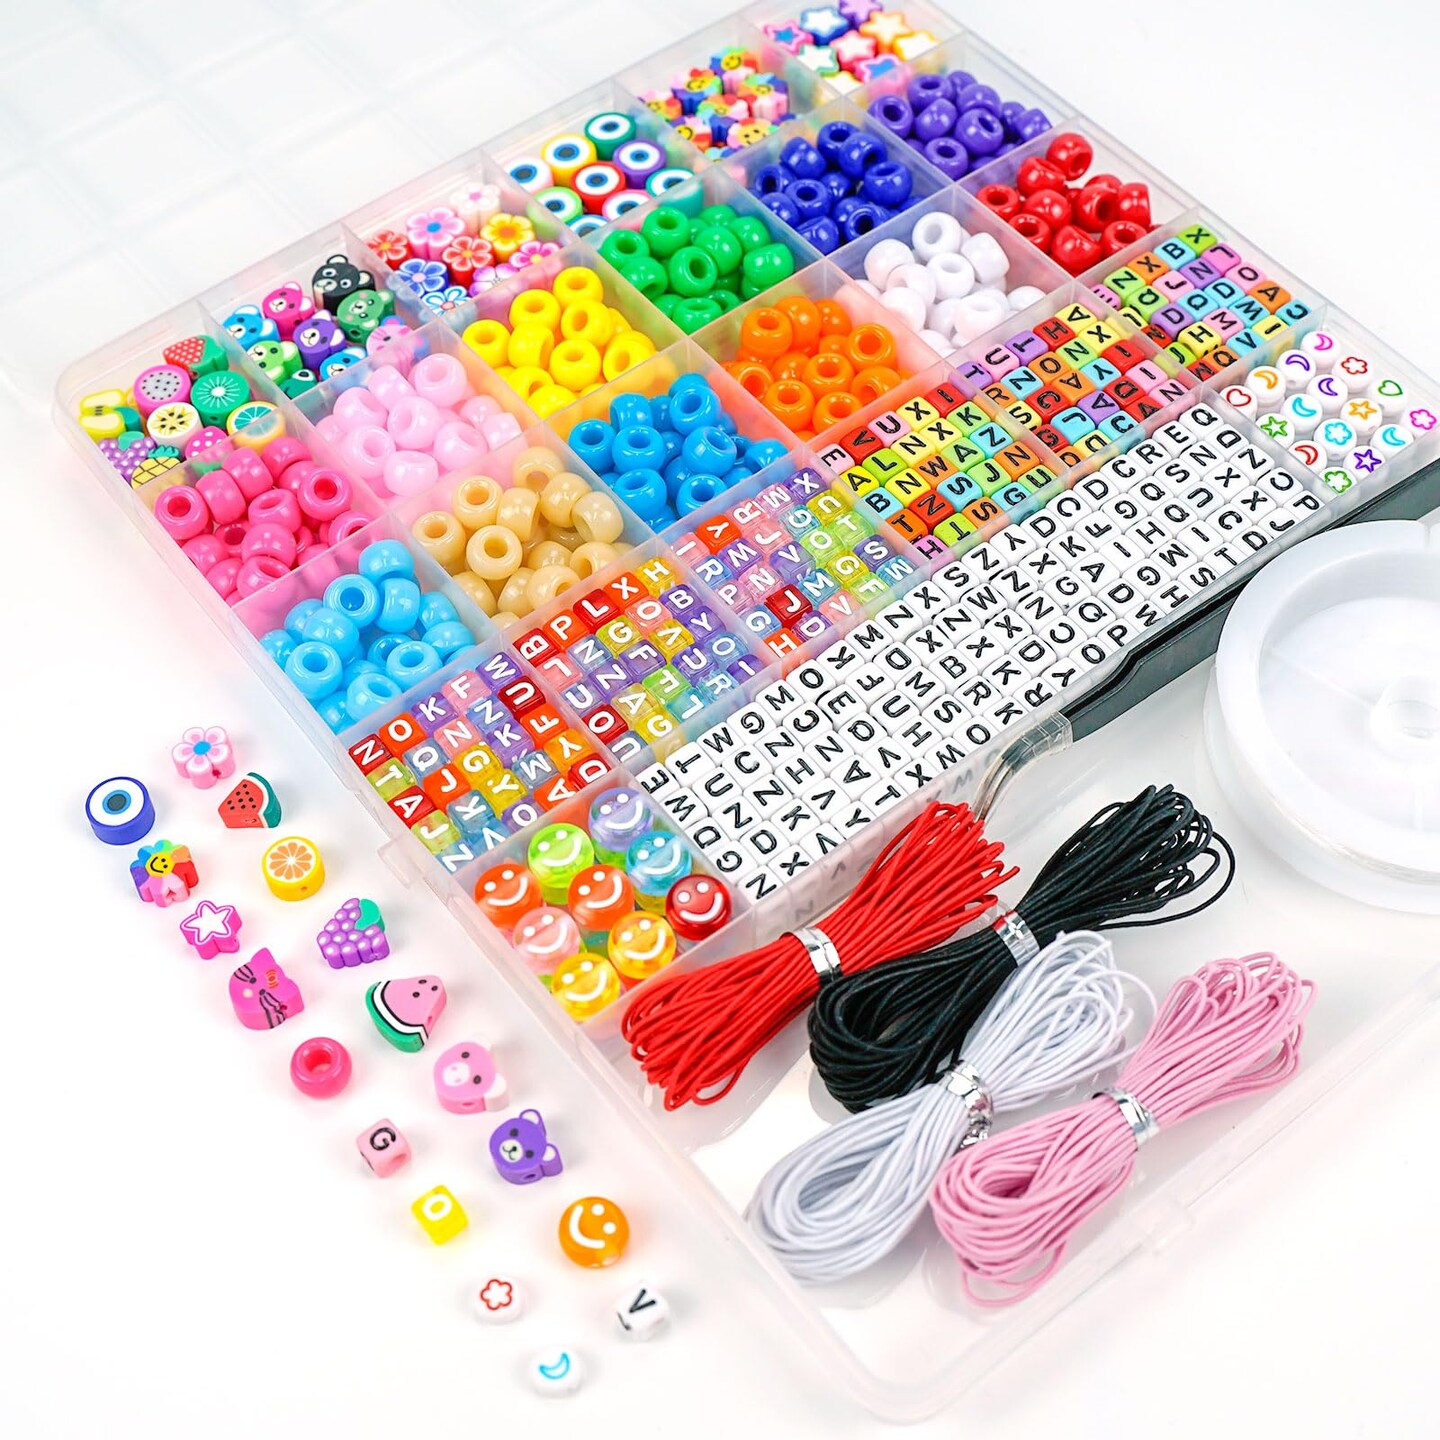 Bead Kids Set, Bracelet Making Kit Letter Beads Improve